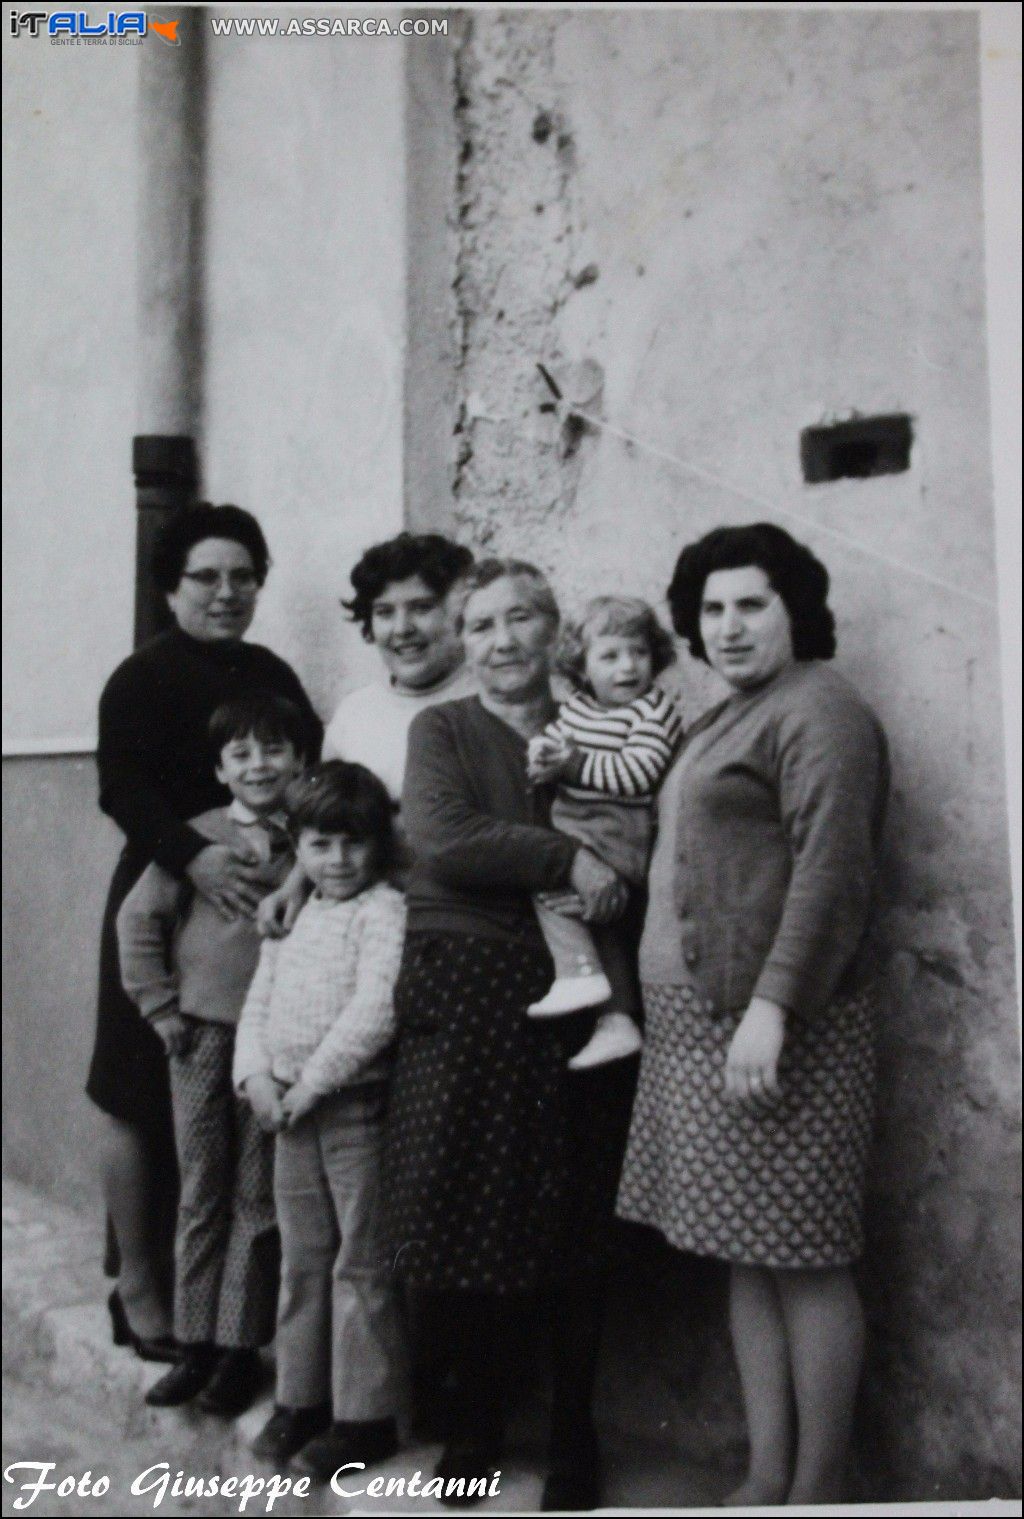 da sx Anna e Concetta Centanni,Angela Barcellona la piccola Angela Centanni e Concetta Cocchiara,
i piccoli da sx Mario Biondolillo e Giuseppe Centanni. Anno 1976  circa.